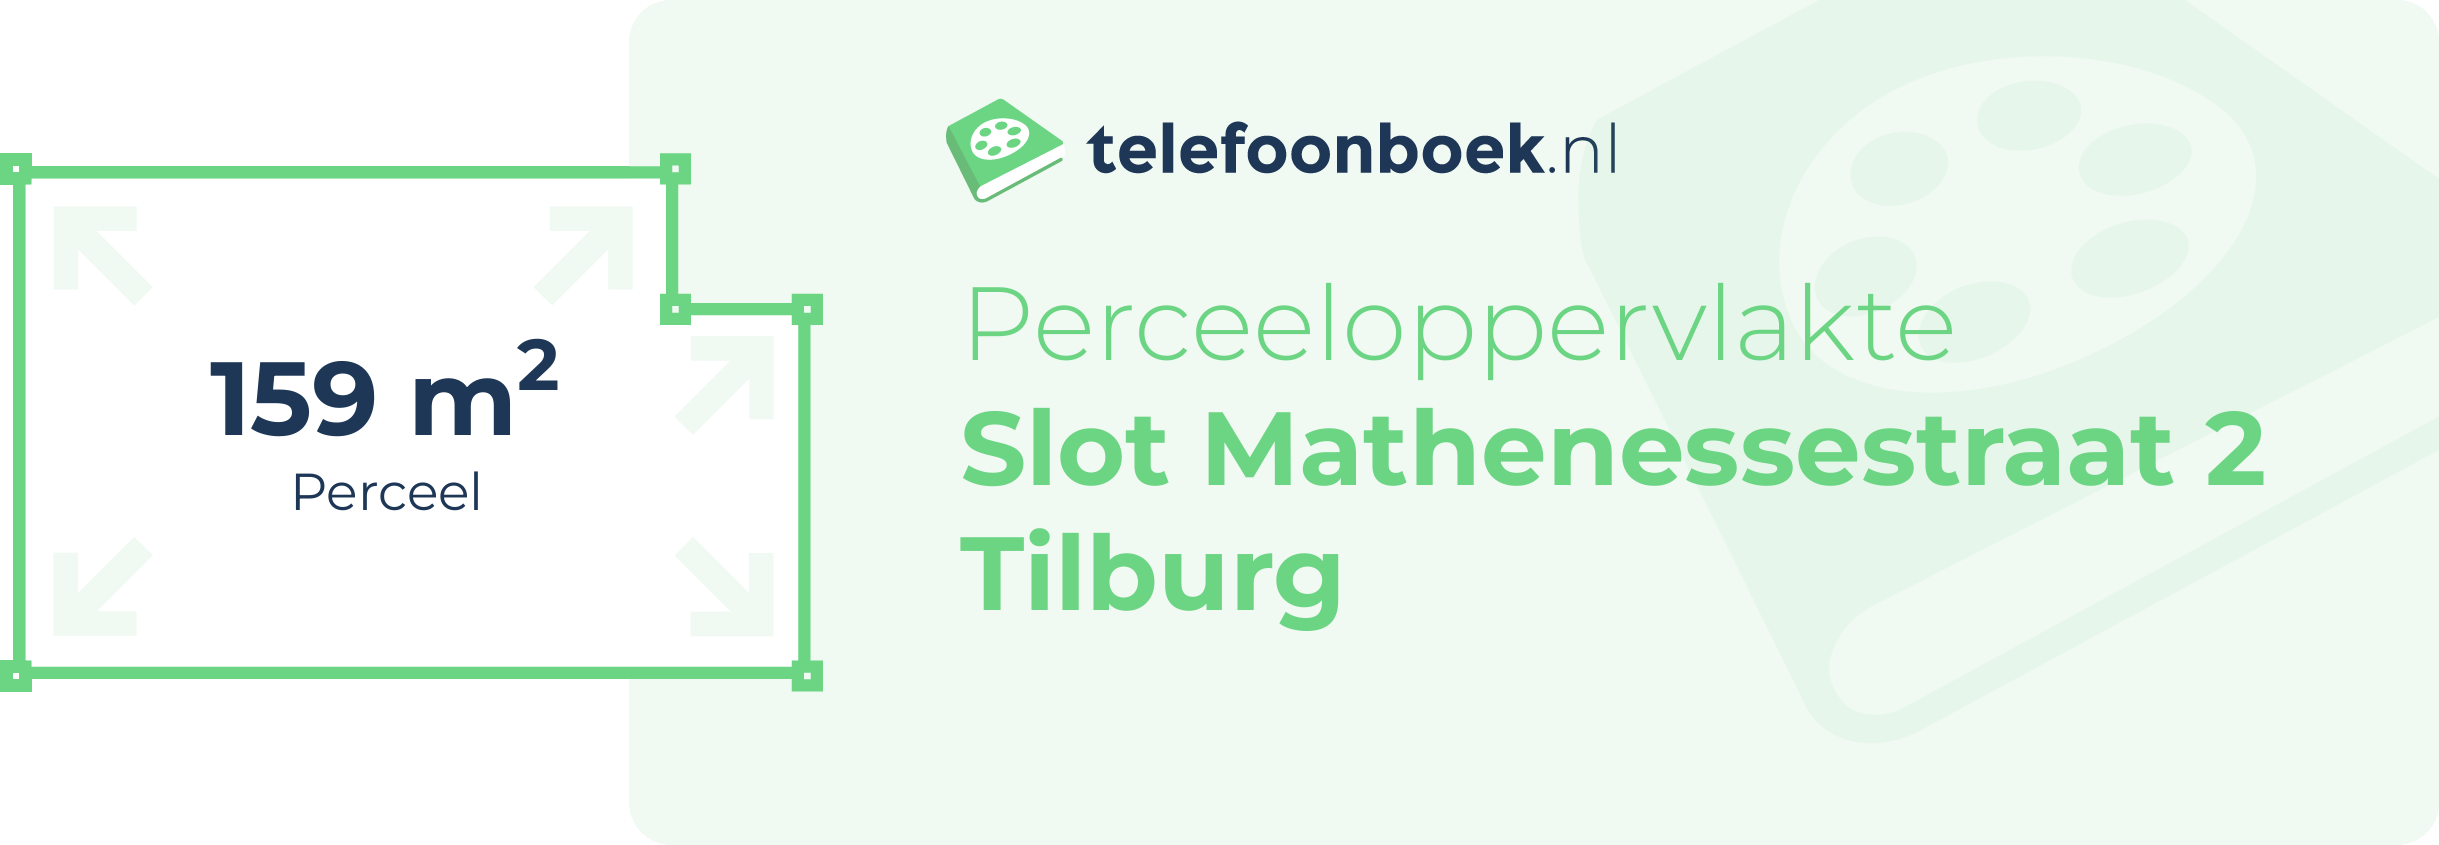 Perceeloppervlakte Slot Mathenessestraat 2 Tilburg